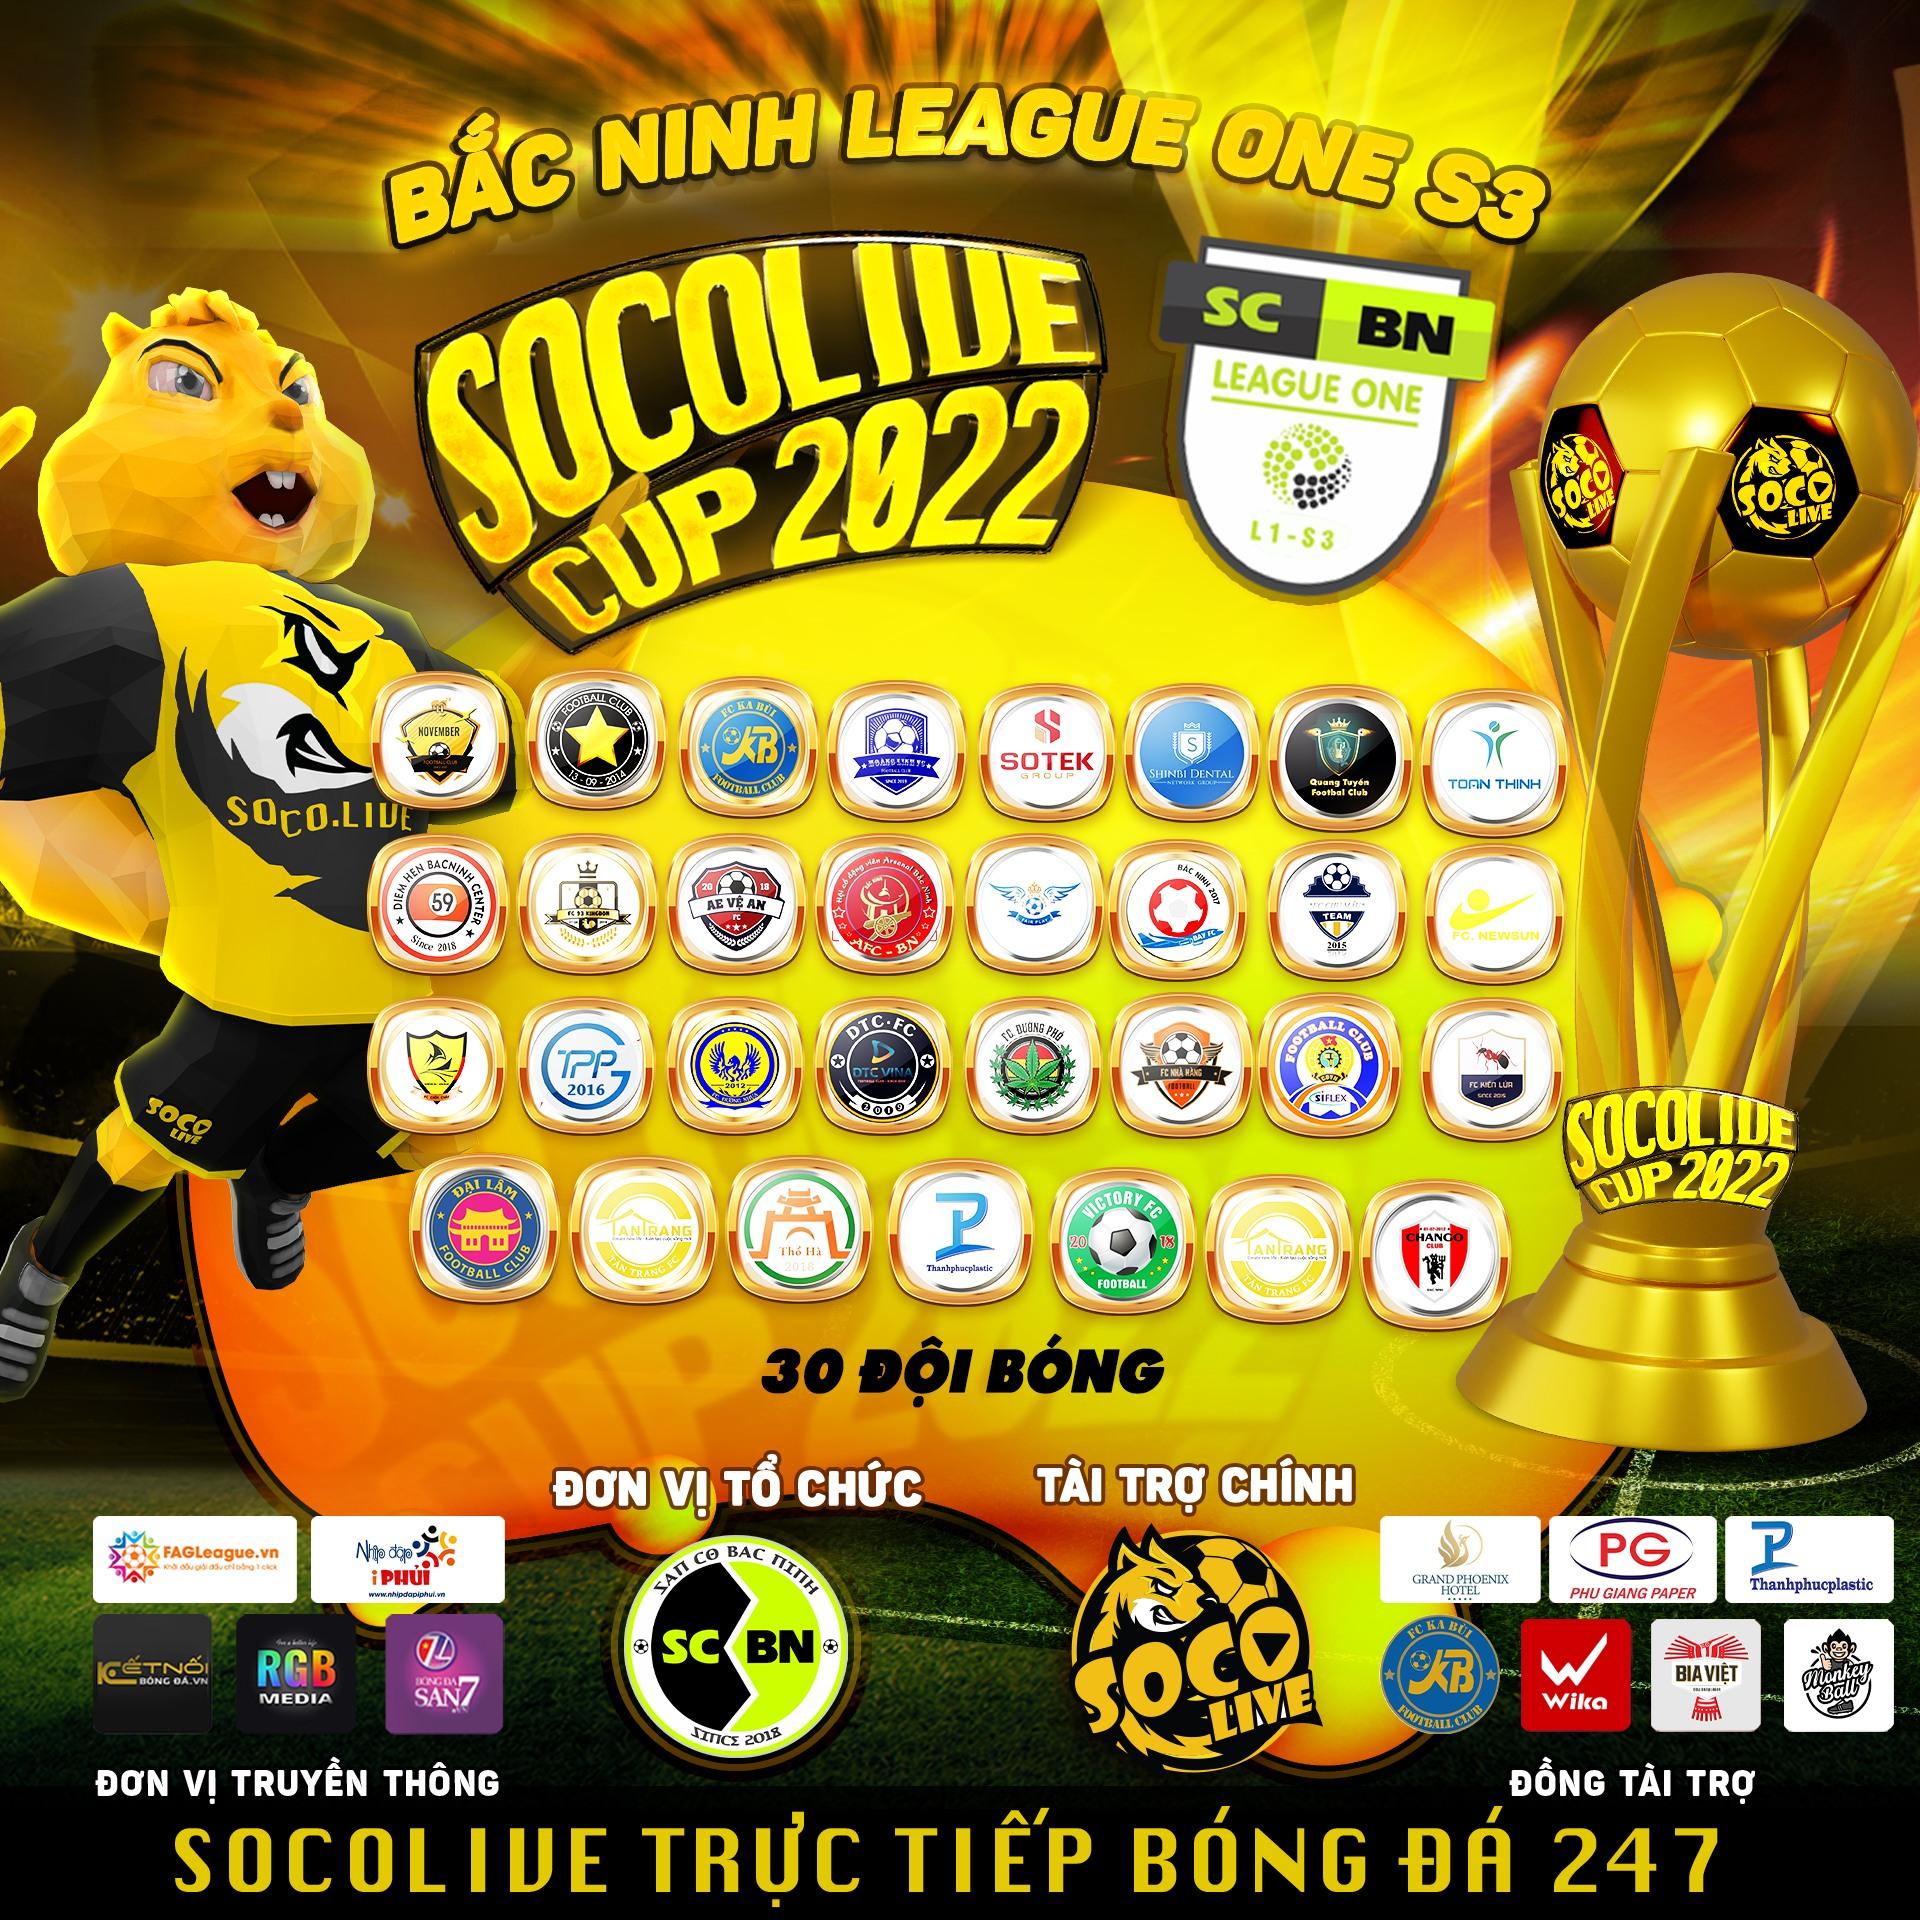 30 đội bóng tham gia Giải bóng đá Bắc Ninh League One S3 - Socolive Cup